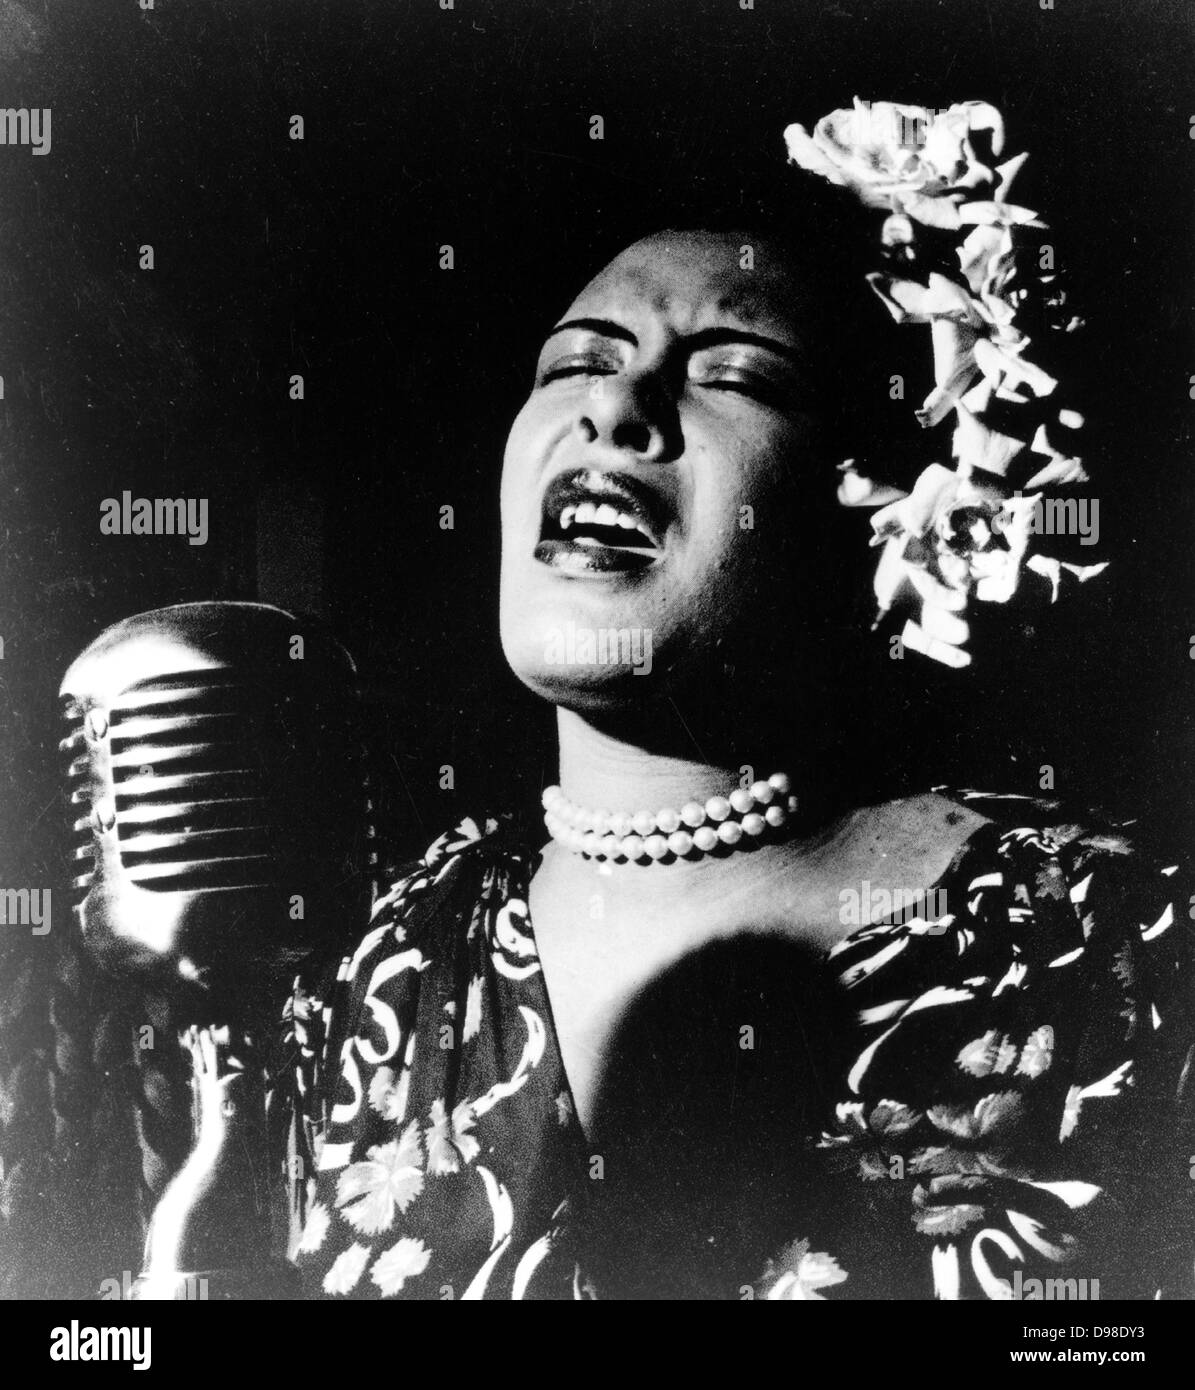 Billie Holiday (1915-1959, geboren Eleanora Fagan) US-amerikanischer jazz-Sänger und Songwriter. Stockfoto